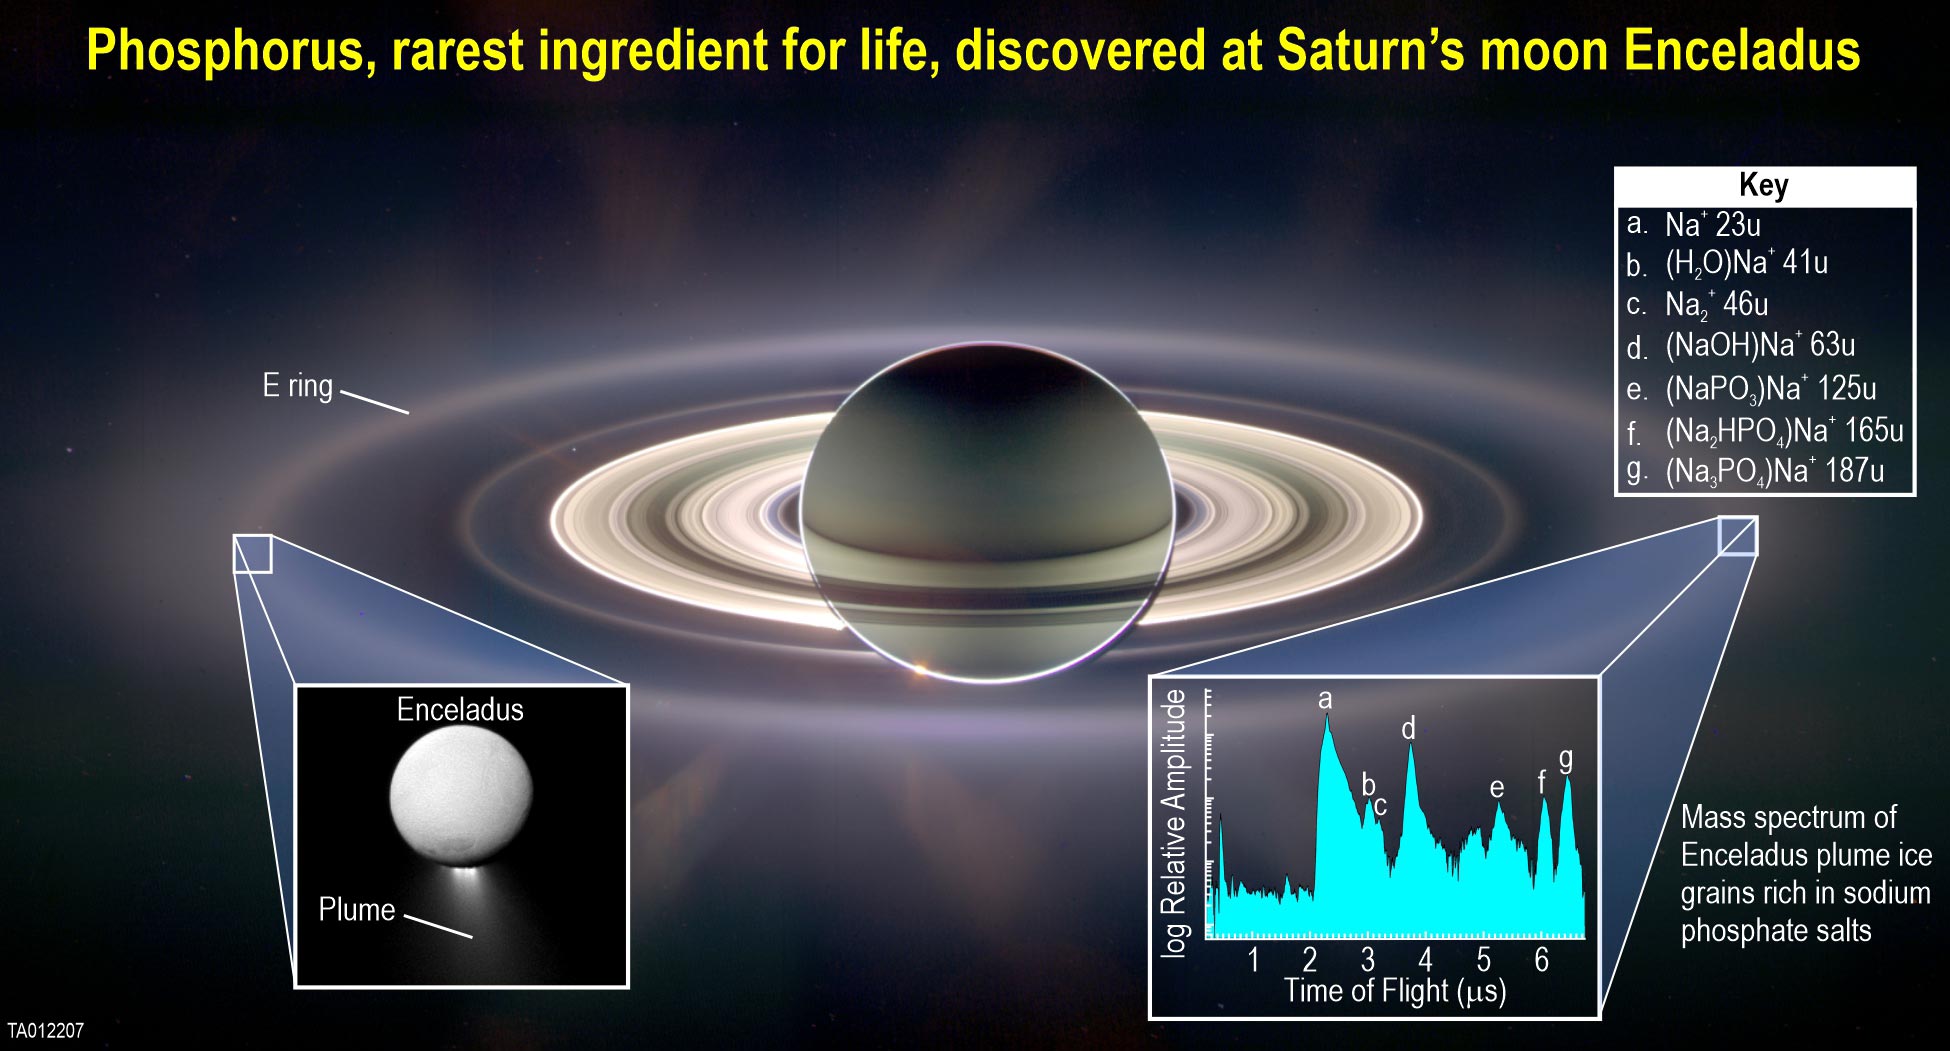 Ingrediente crítico para la vida descubierto en la luna helada Encélado de Saturno